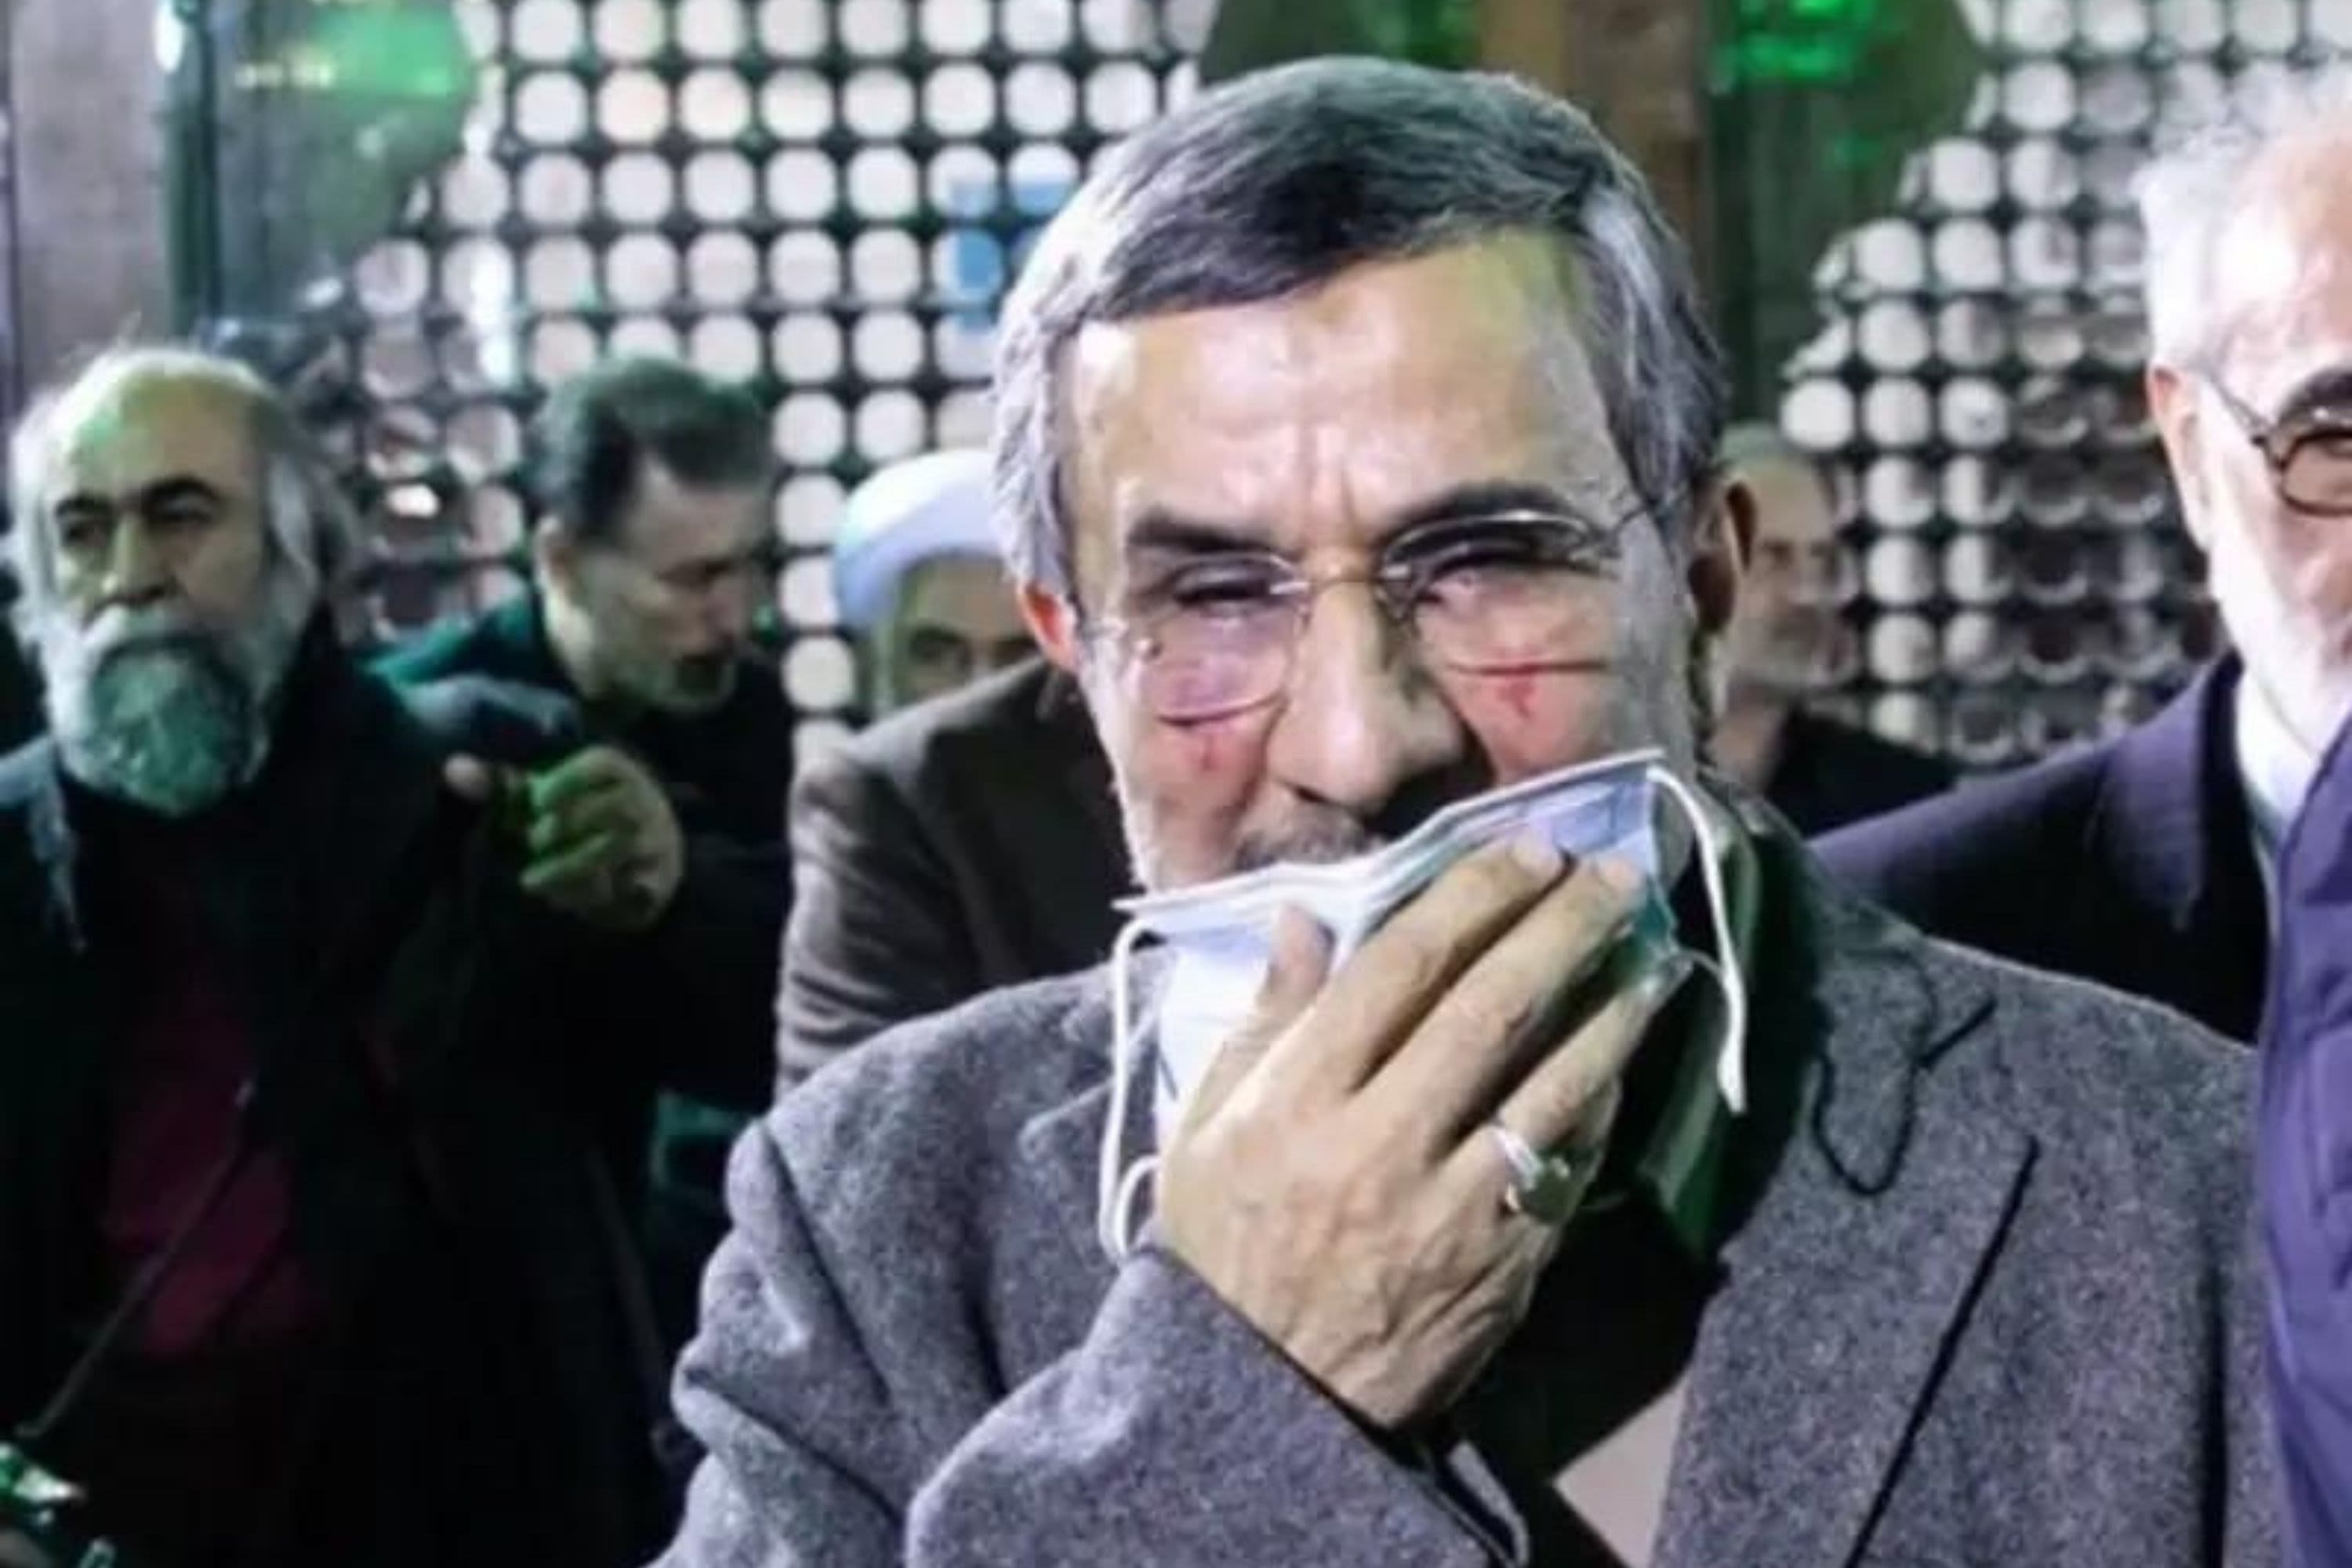 Former Iranian President Ahmadinejad survives assassination attempt